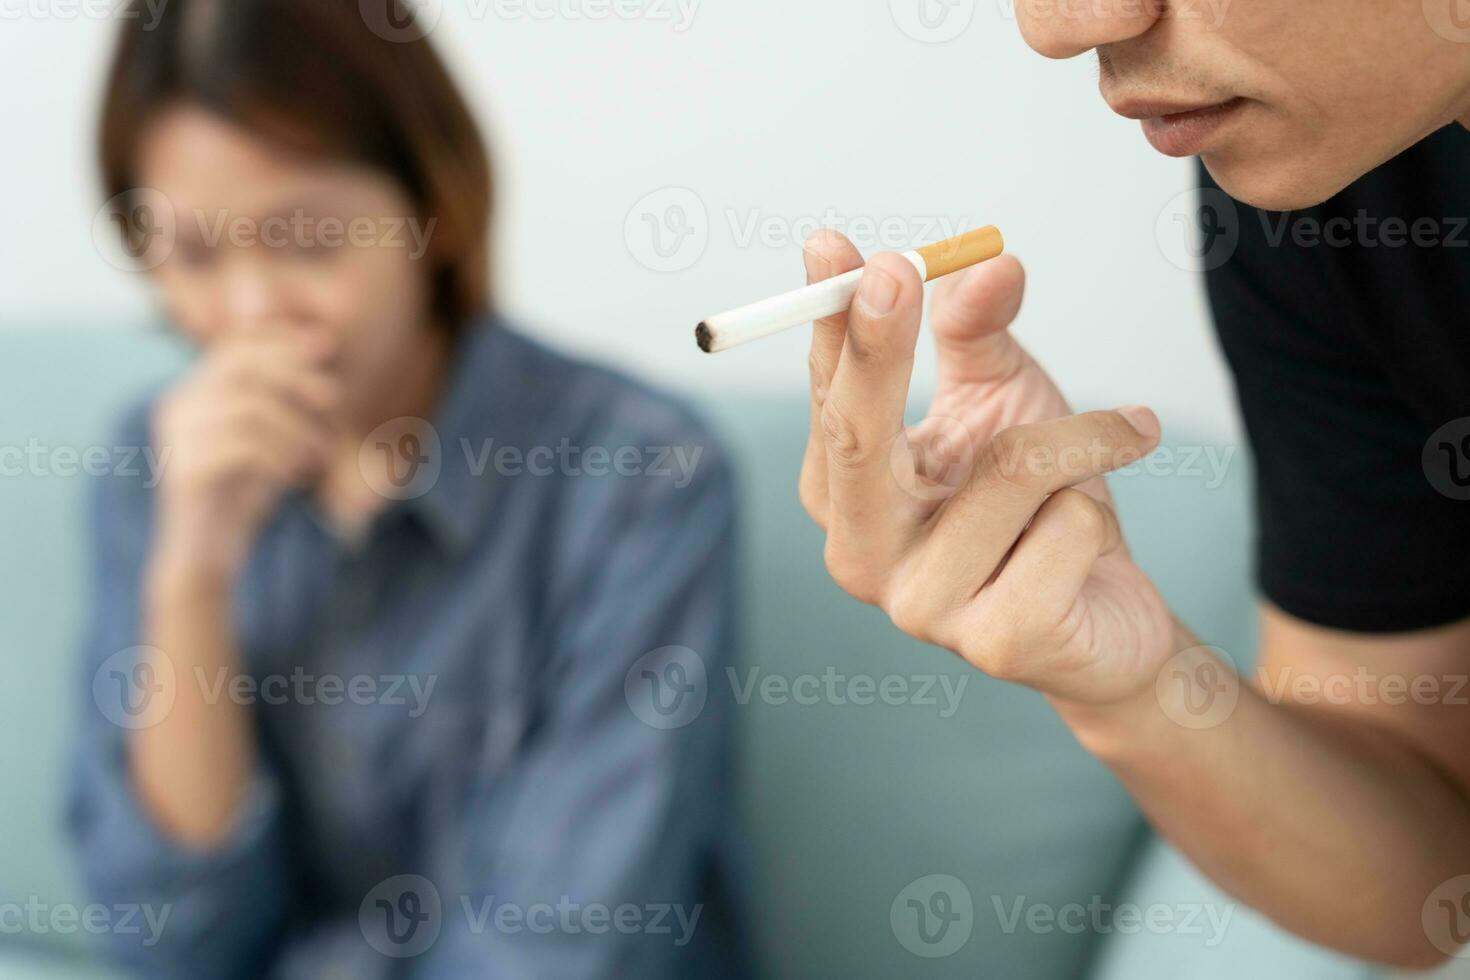 Nee rook. vrouw Hoes neus- ten gevolge naar sigaret rook geur, weigeren, afwijzen, pauze, zeggen nee, stoppen roken voor Gezondheid. wereld tabak dag. drugs, long kanker, emfyseem , long ziekte, nicotine foto